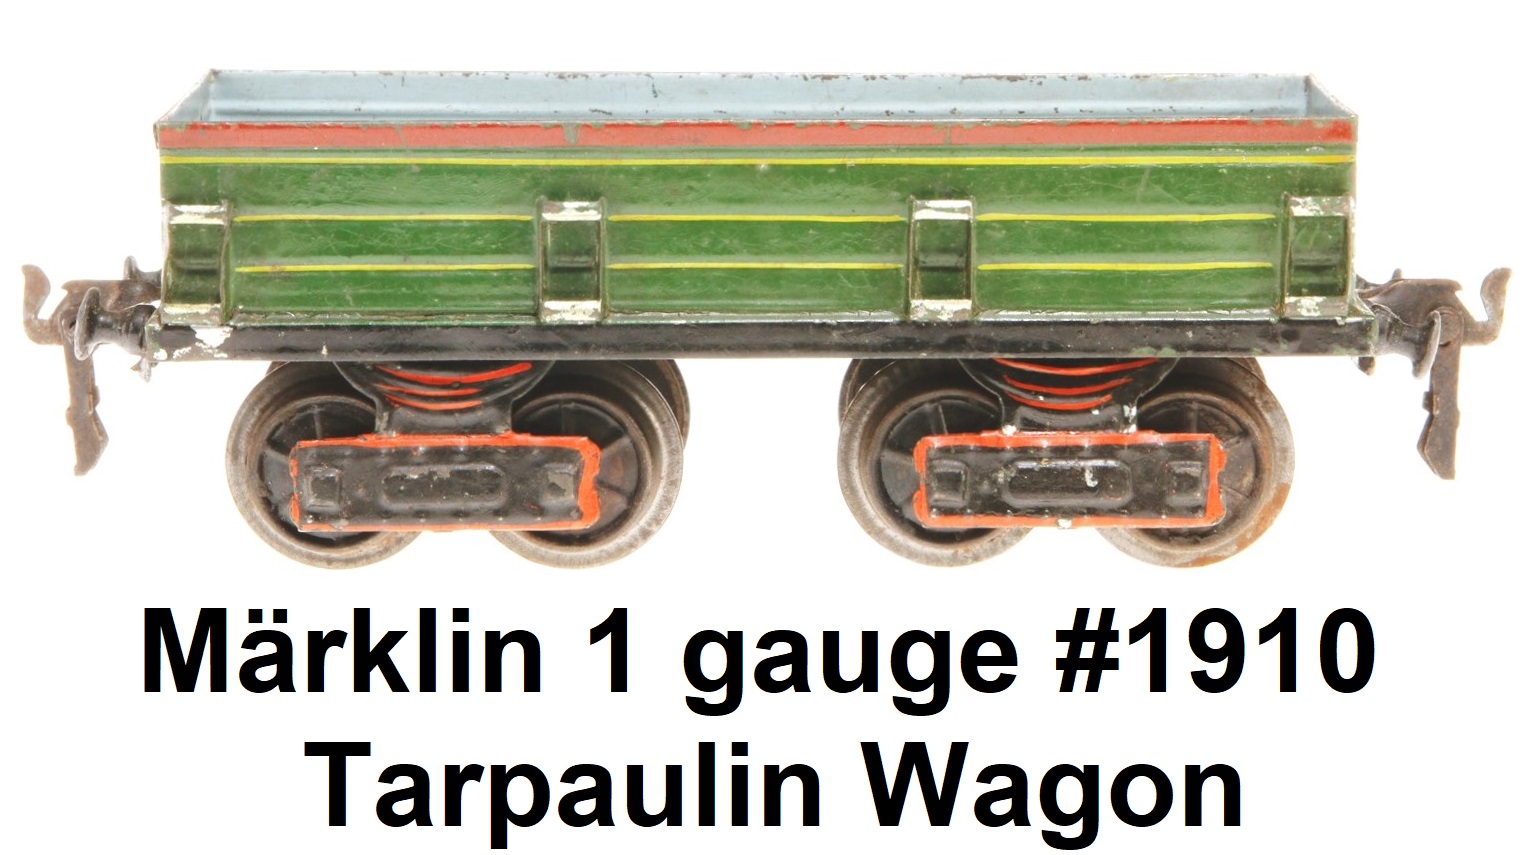 Märklin 1 gauge tarpaulin wagon #1910